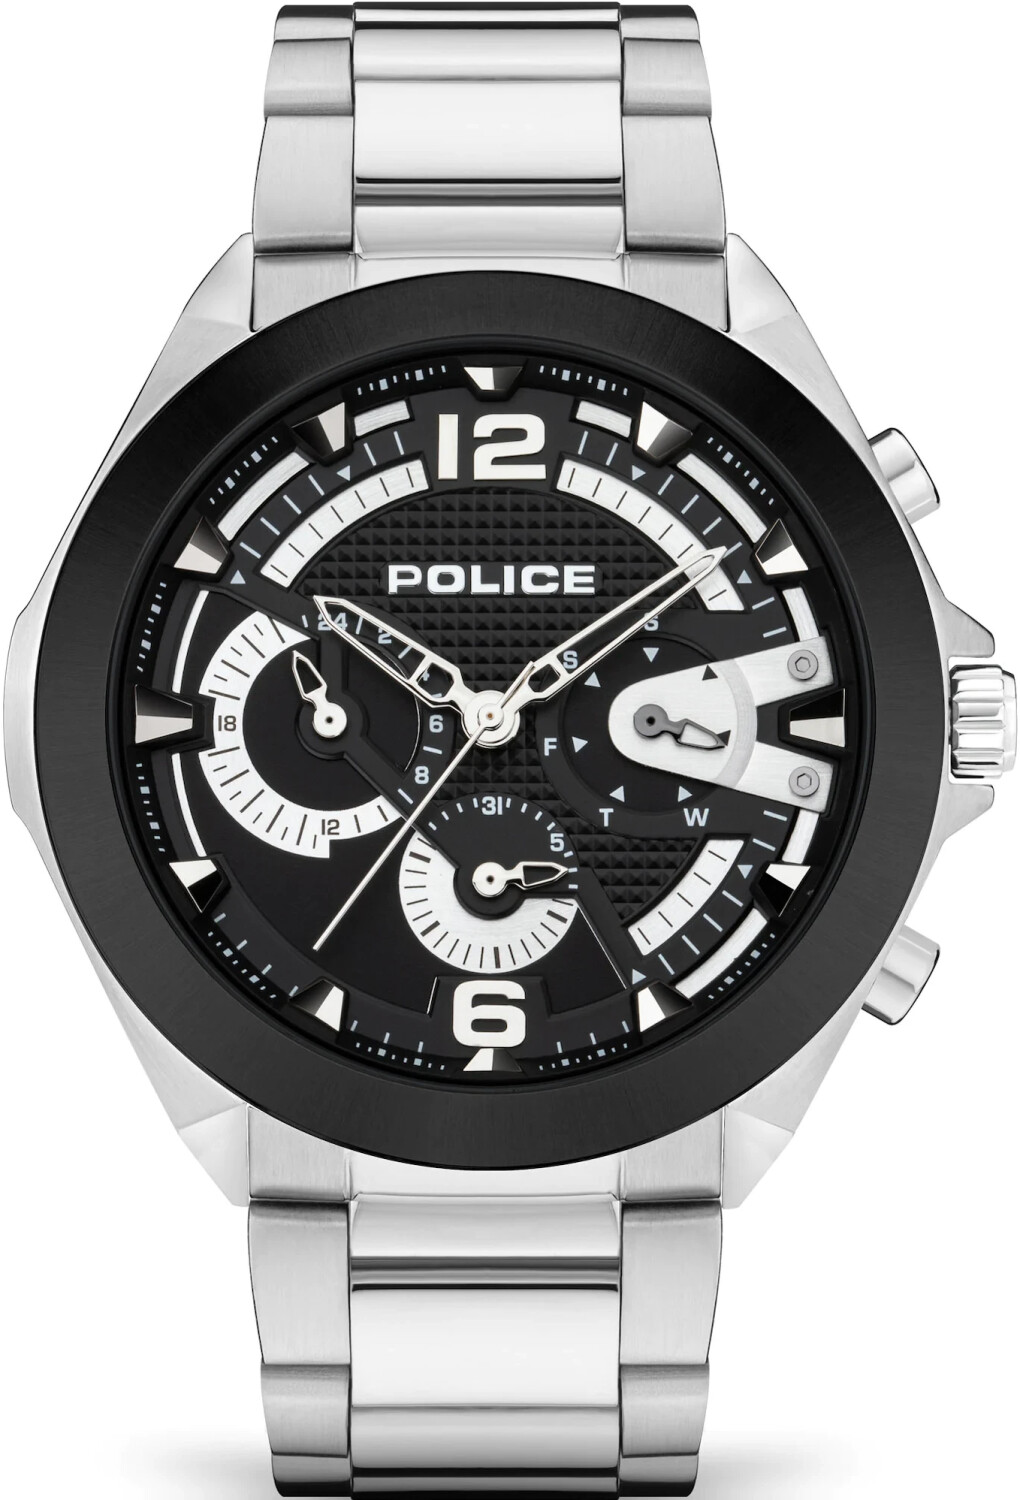 Photos - Wrist Watch Police Zenith Watch silber  (PEWJK2108741)